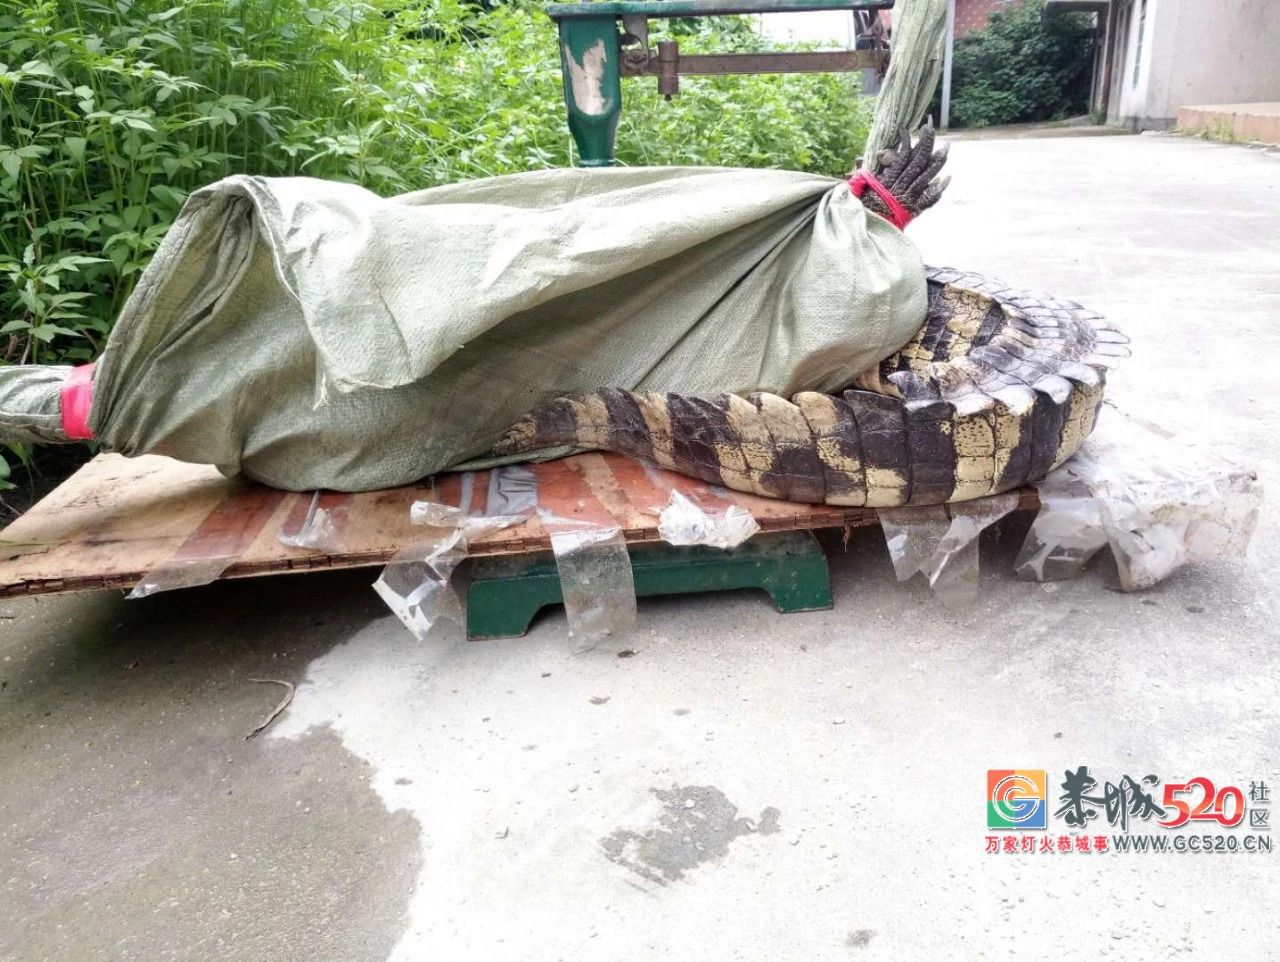 广州流溪河抓到一条2米长的鳄鱼！是真的！不能吃！187 / 作者:狗婆蛇 / 帖子ID:263157